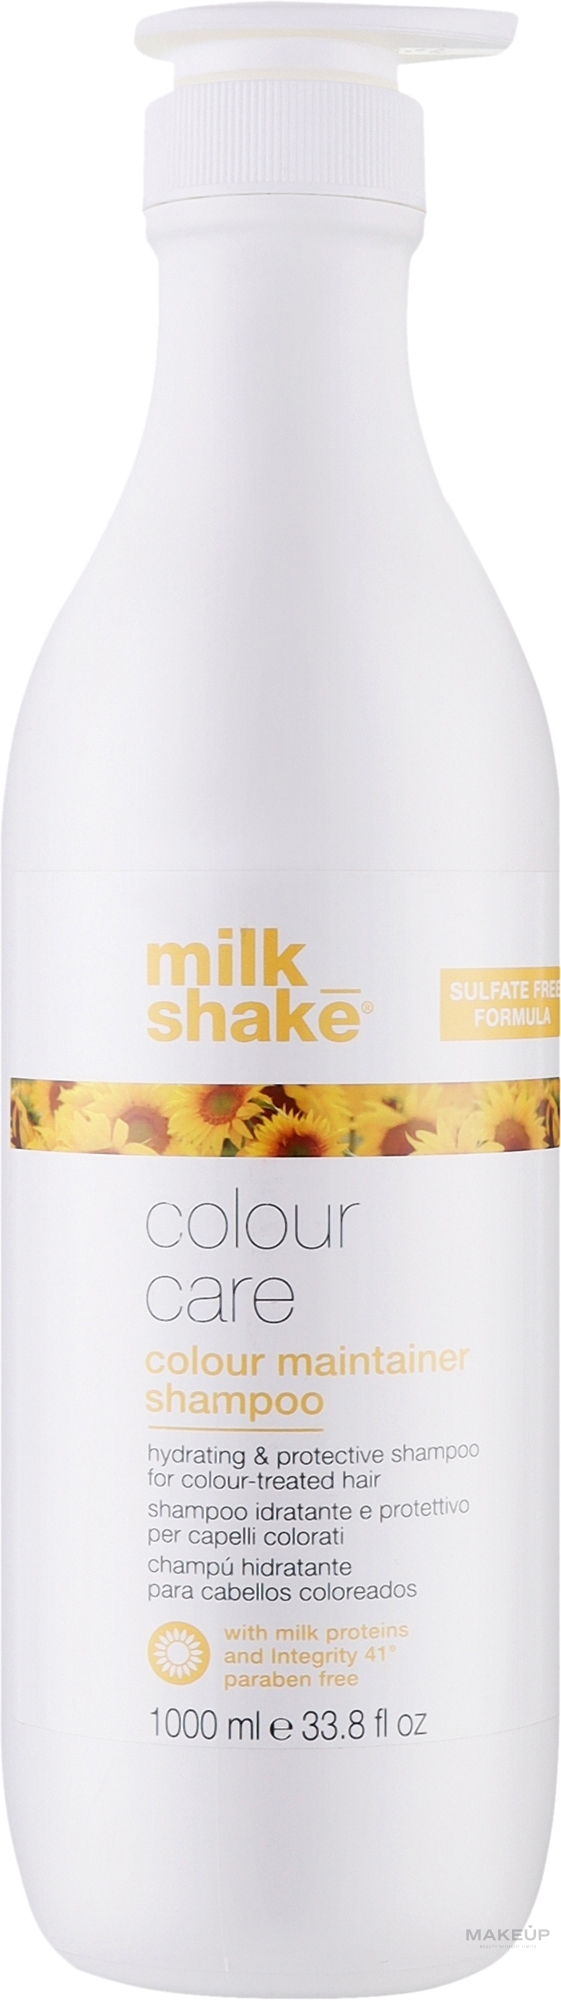 Шампунь для окрашенных волос без сульфатов - Milk_Shake Color Care Maintainer Shampoo Sulfate Free — фото 1000ml